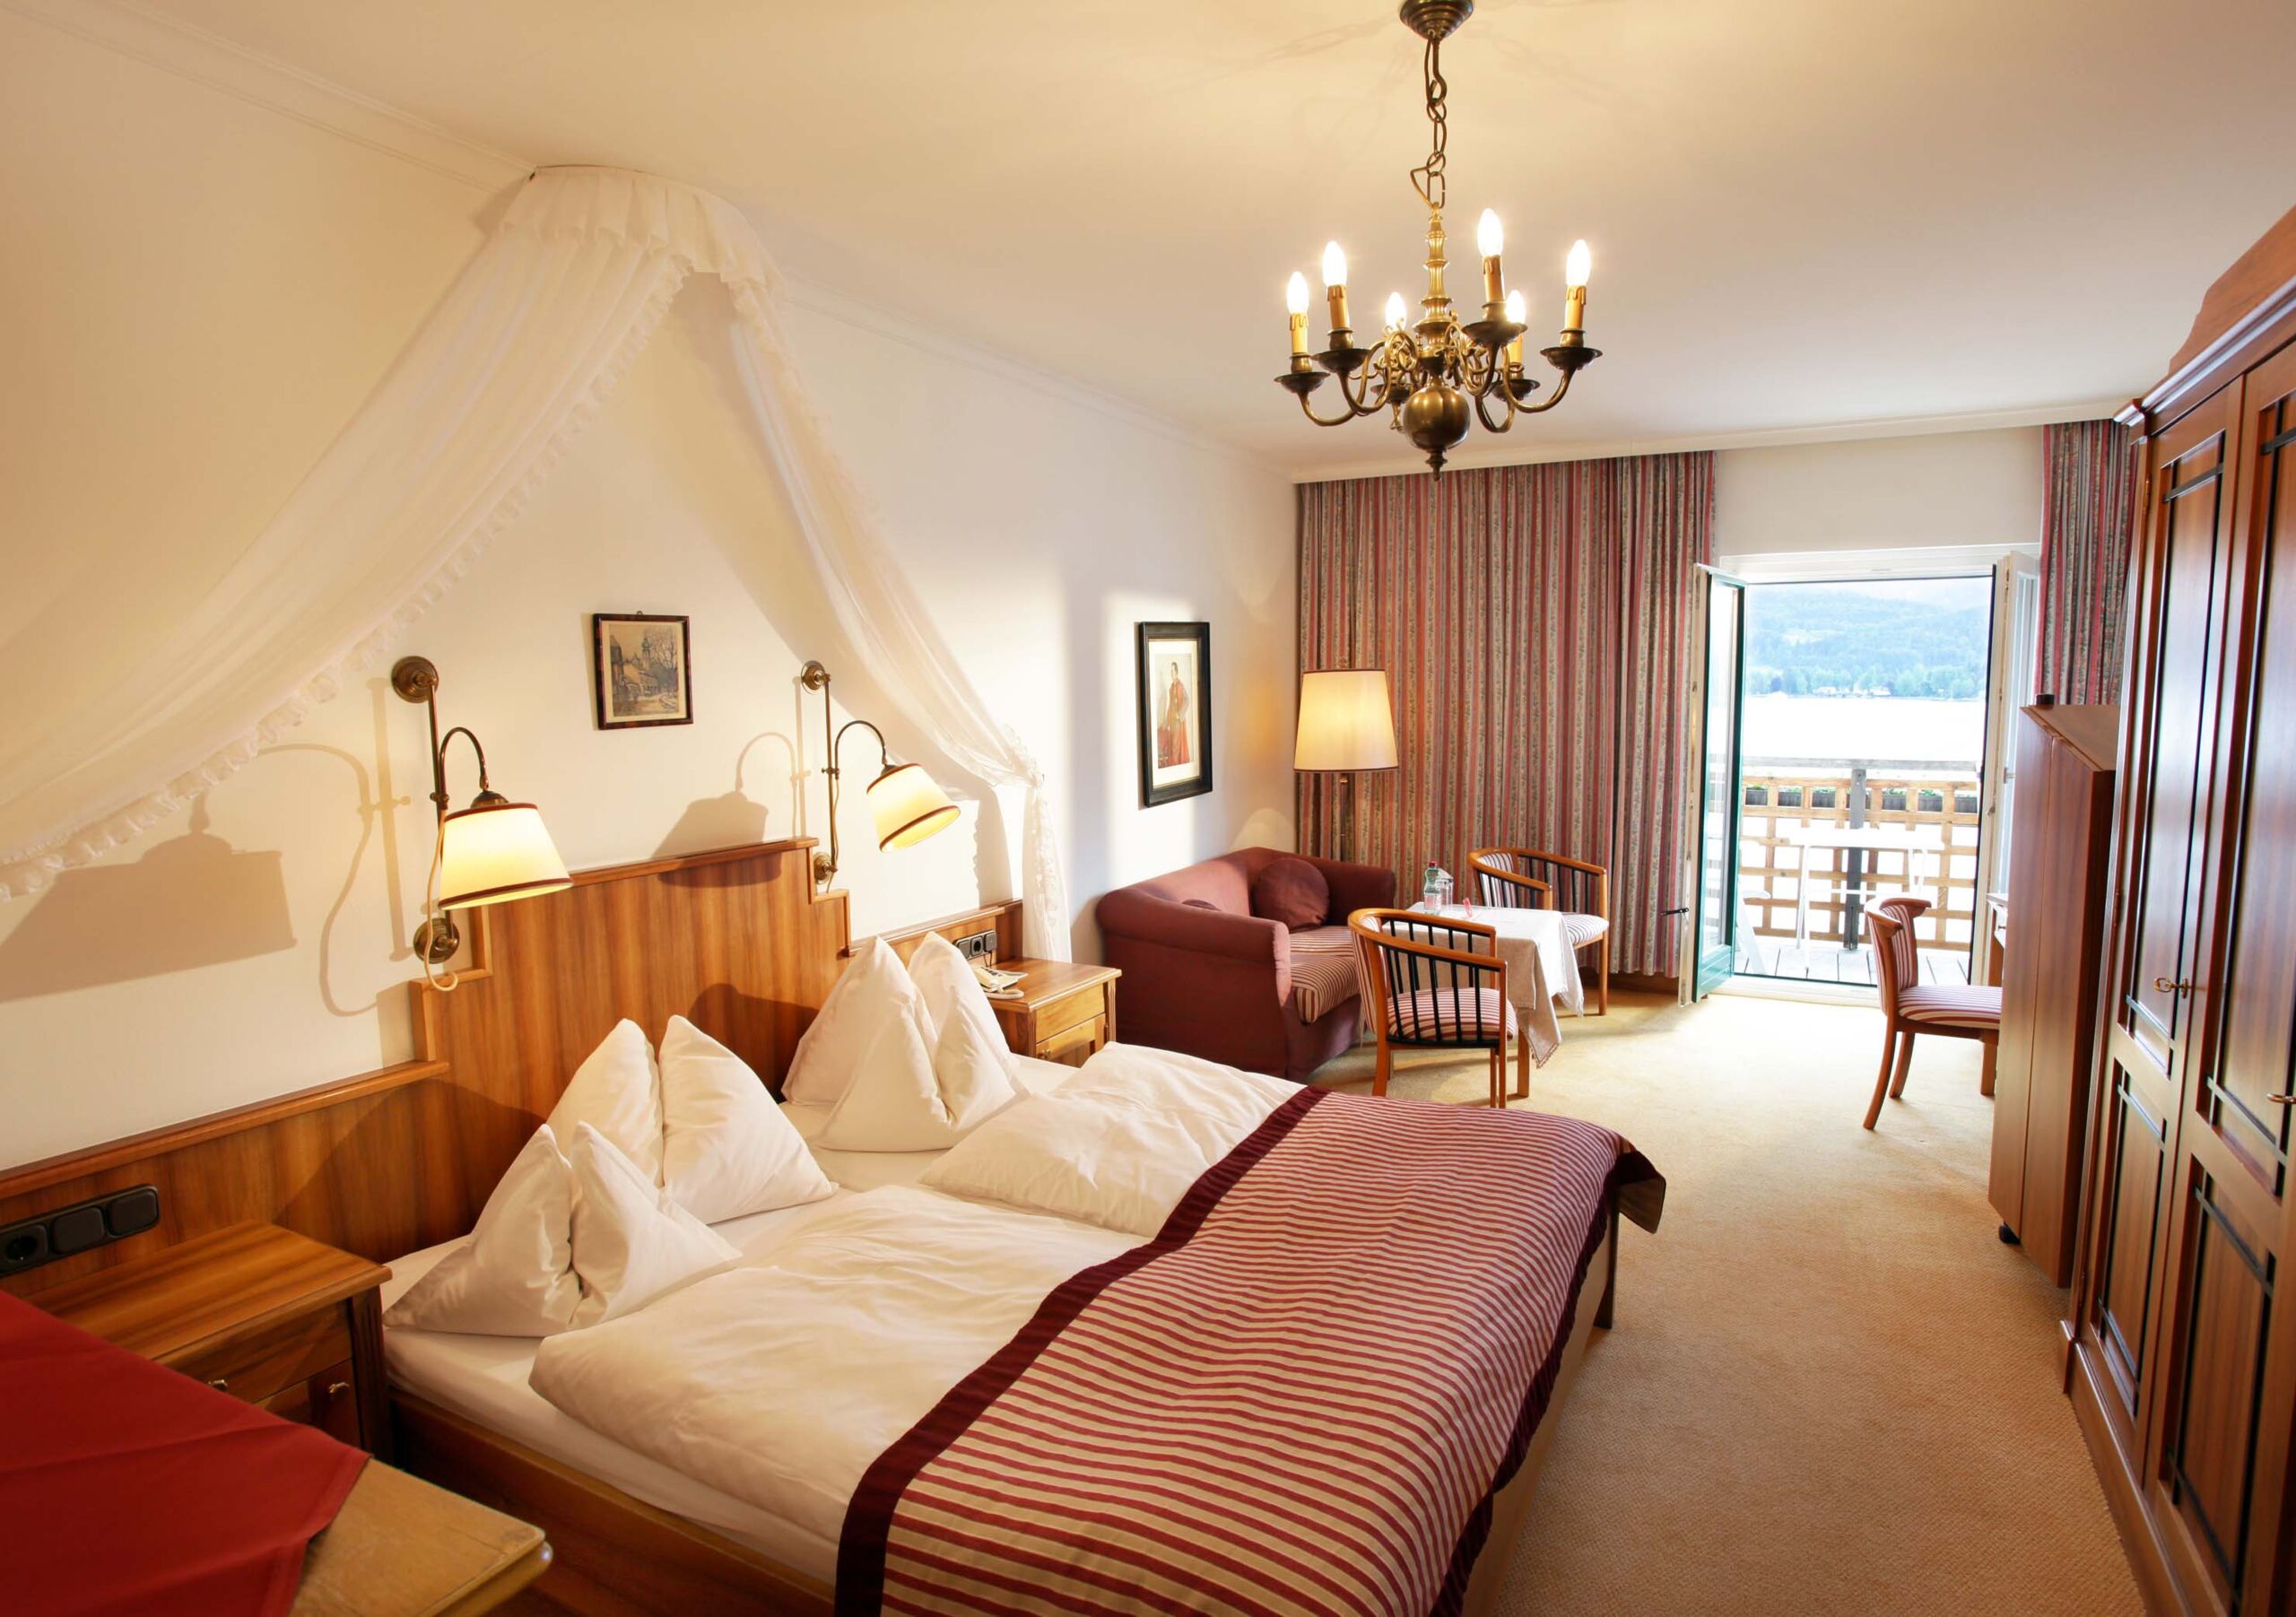 Zimmer im Weissen Rössl im Stil der 50er Jahre mit Balkonsicht uriger Nachttischbeleuchtung auf den Wolfgangsee, schönem Deckenkronleuchter und gemütlichem Bett